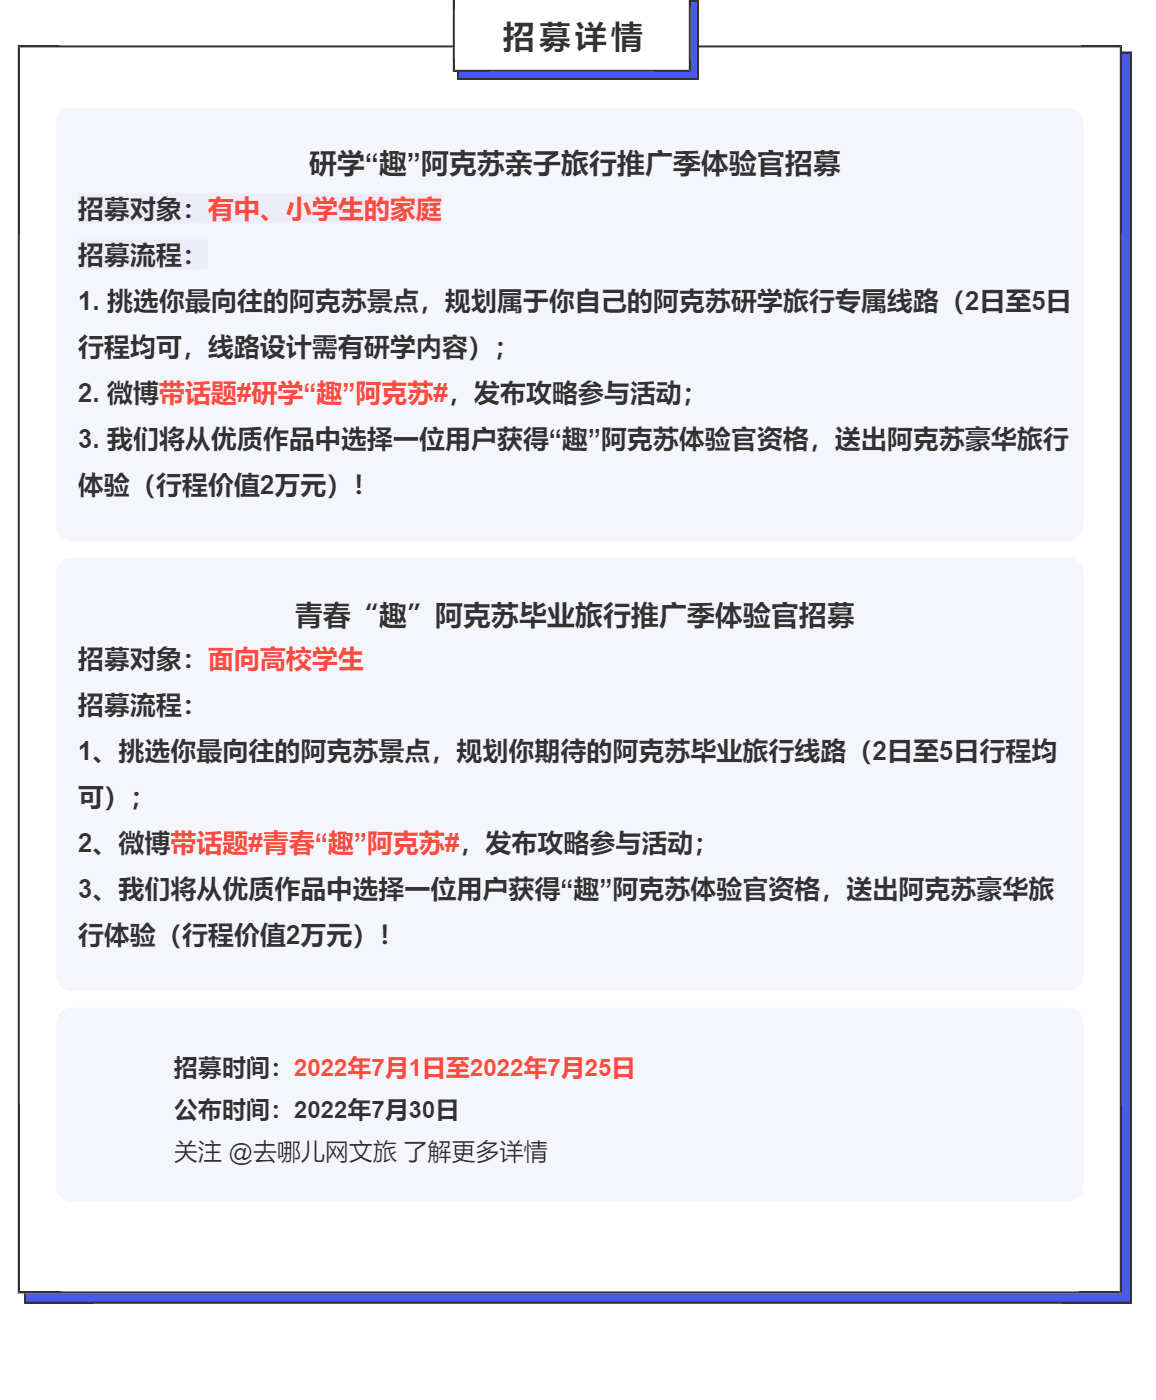 https://xtsimages001.oss-cn-hangzhou.aliyuncs.com/users-271884/2022_06_30_19_03_33534812.png